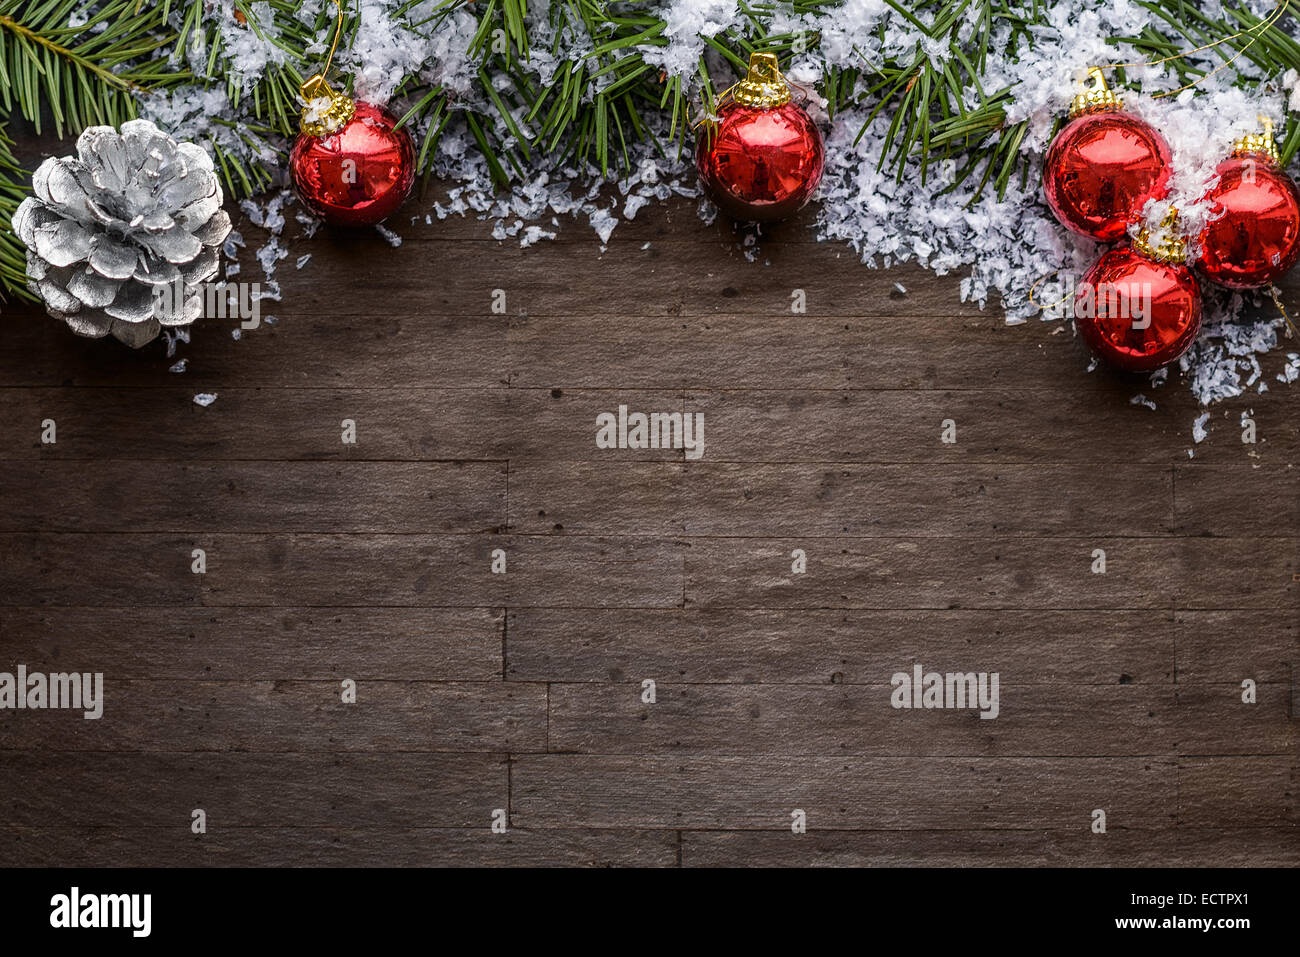 Weihnachten Hintergrund mit bunten roten Kugeln, ein Silber dekorative Tannenzapfen und grünen Tannenzweigen über eine strukturierte graue backg Stockfoto